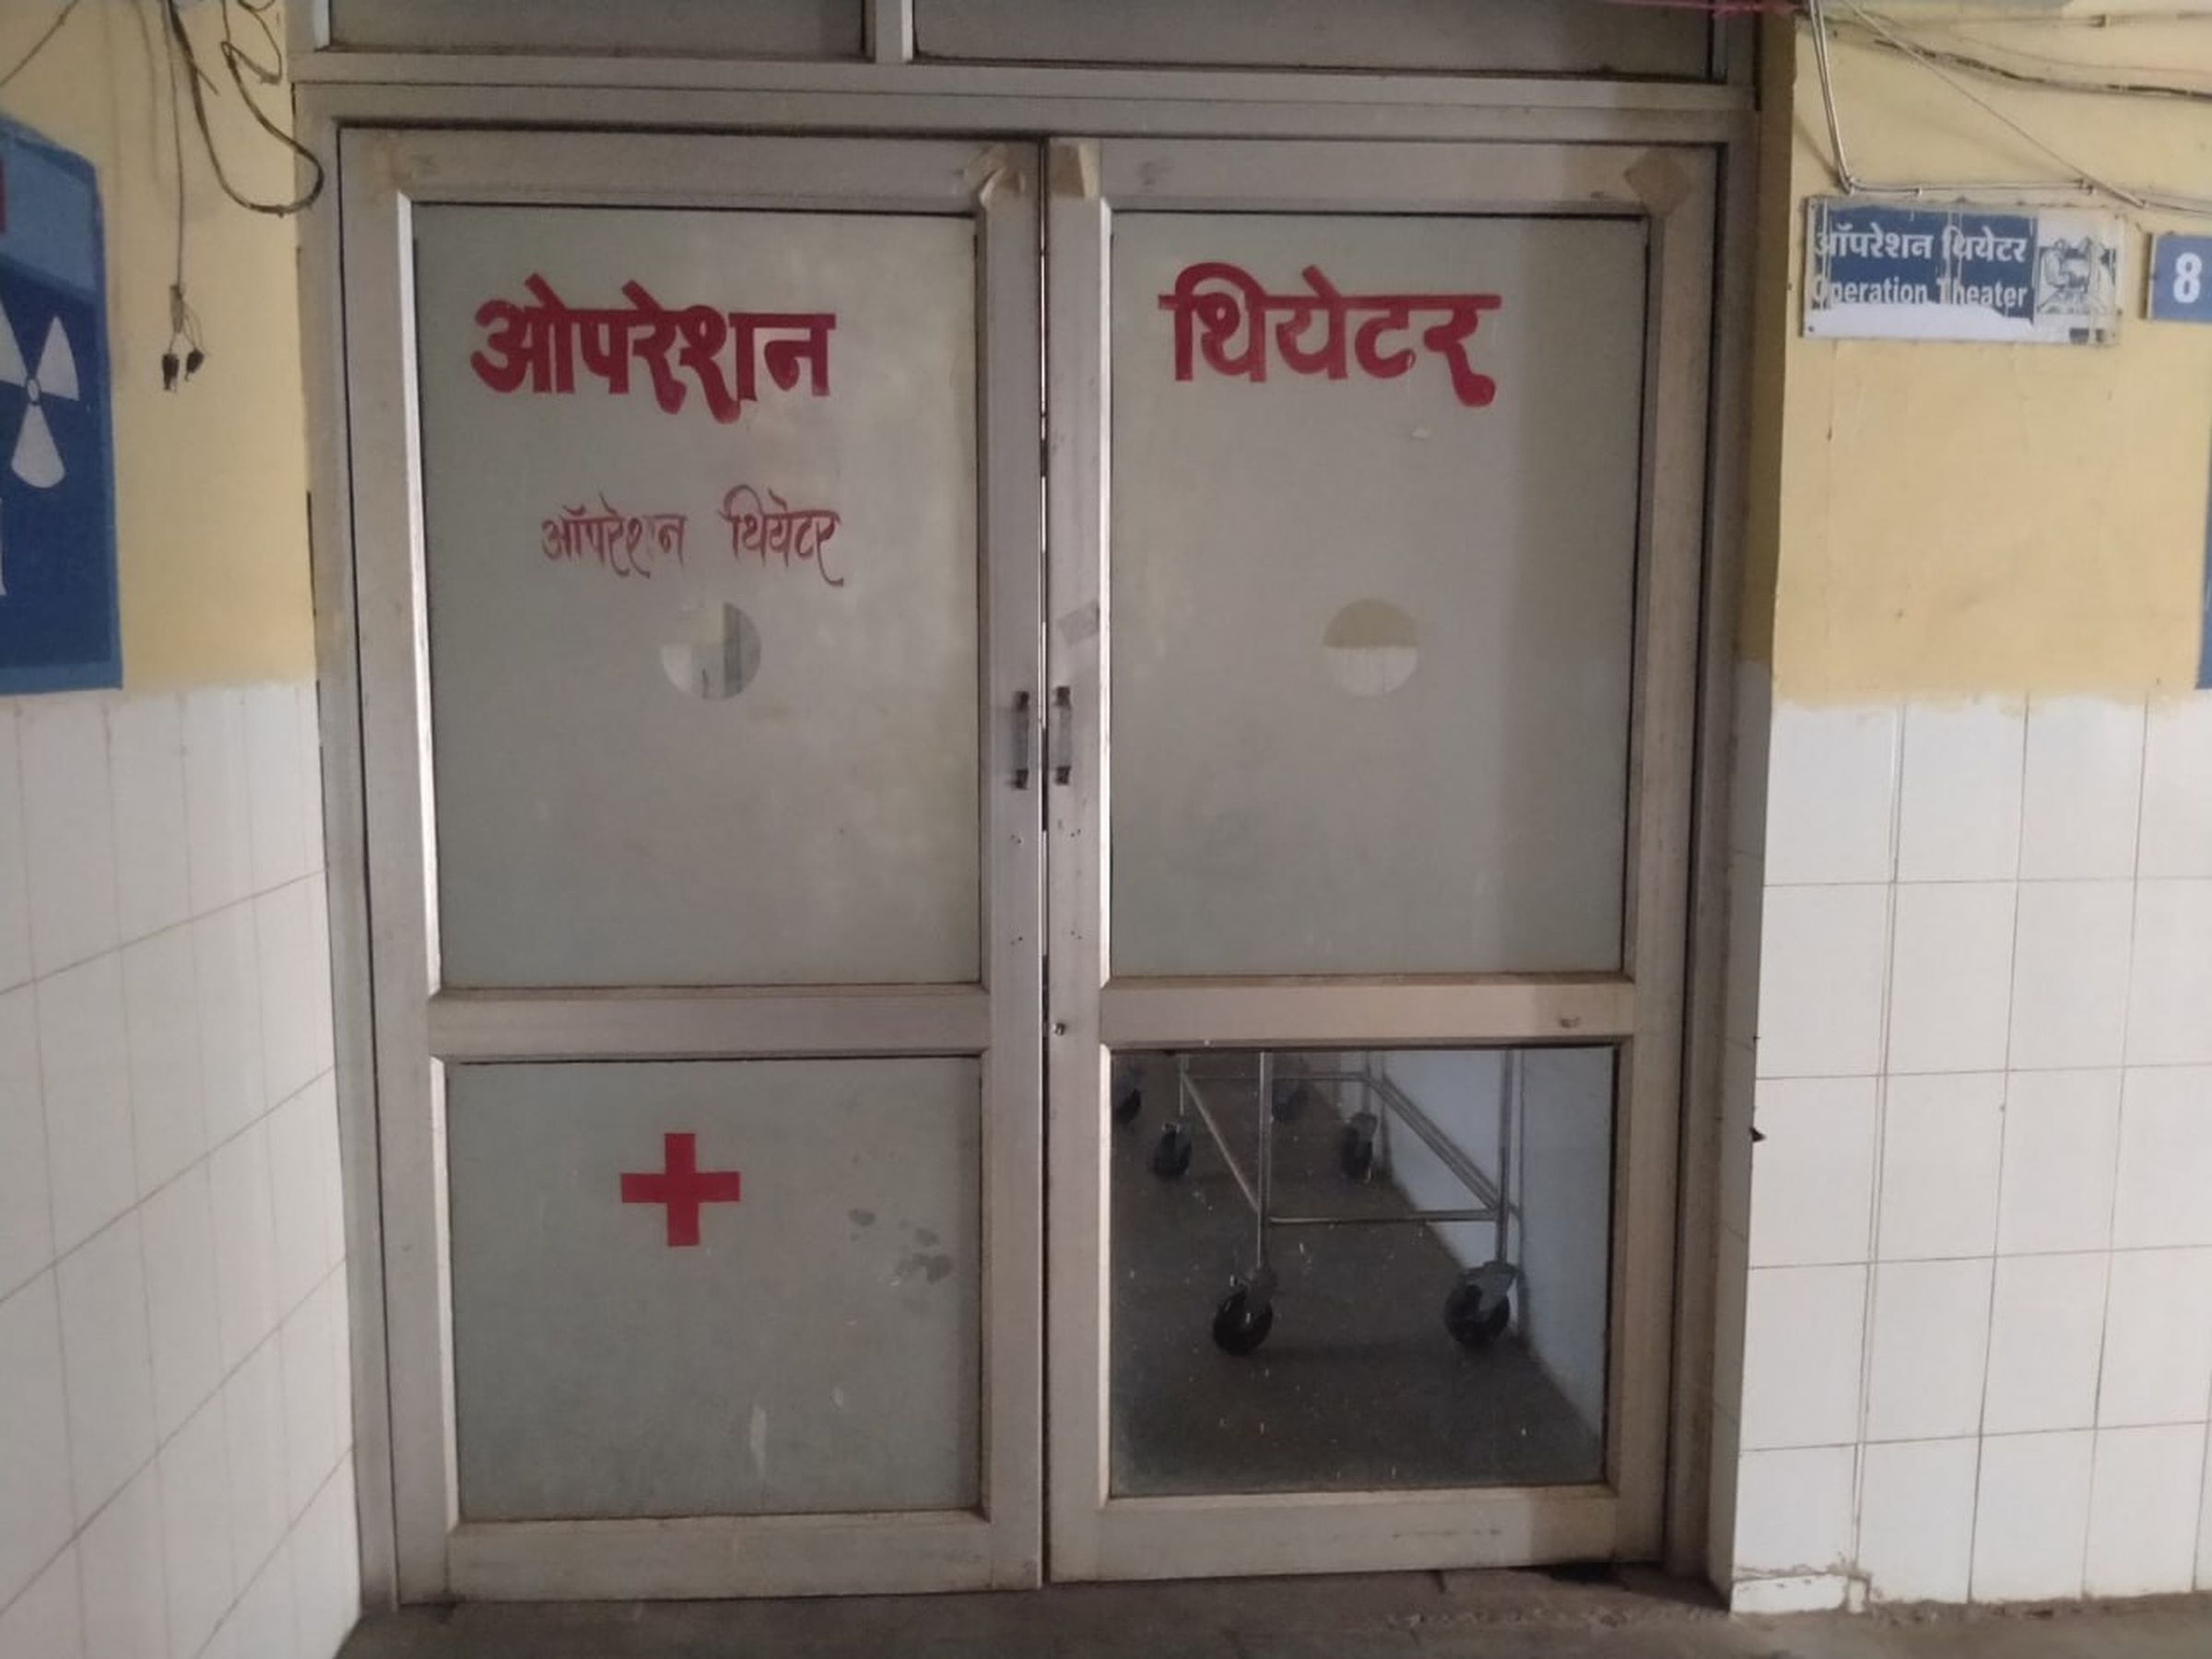 रक्तवीरों की कमी नहीं लेकिन ब्लड बैंक सुविधा नहीं होने से परेशानी,बकानी
सामुदायिक स्वास्थ्य केंद्र में खुले ब्लड स्टोरेज यूनिट